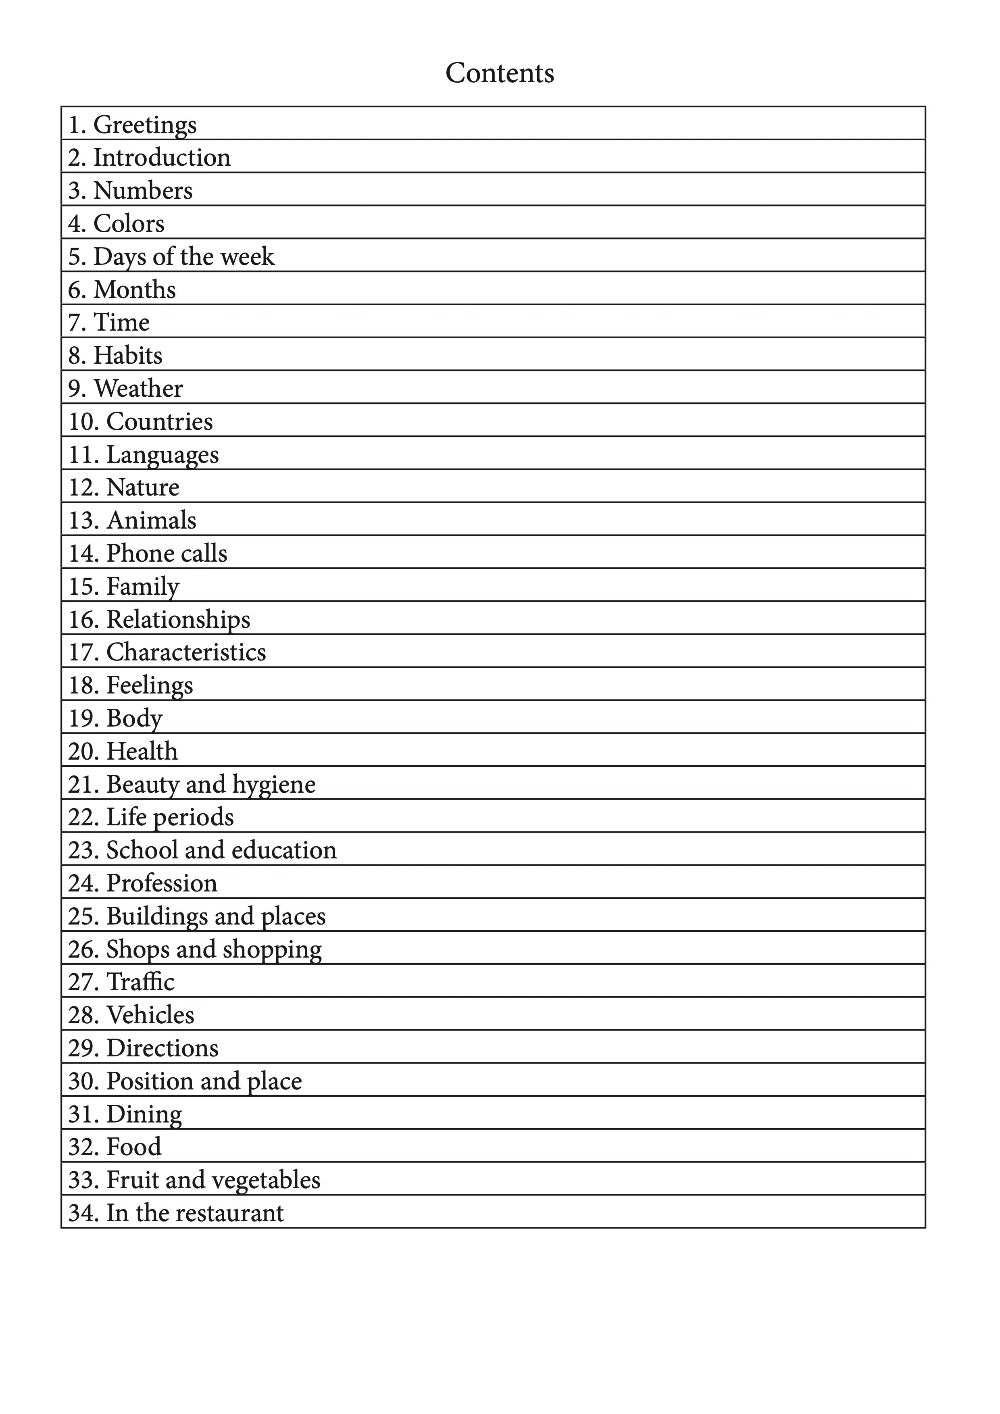 Kimbundu language learning notebook contents page 1